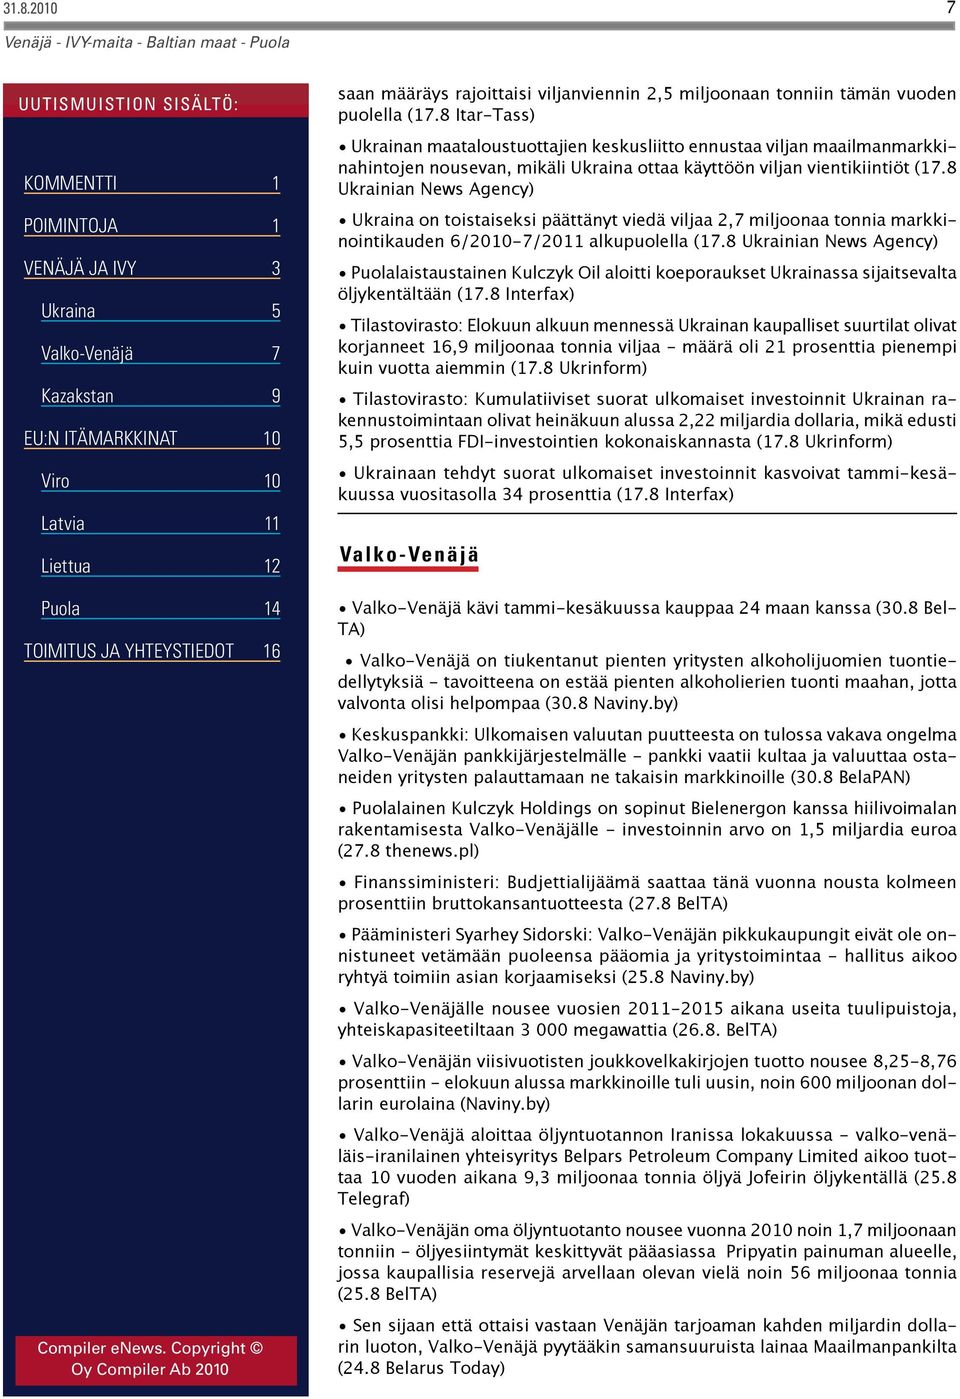 8 Ukrainian News Agency) Ukraina on toistaiseksi päättänyt viedä viljaa 2,7 miljoonaa tonnia markkinointikauden 6/2010-7/2011 alkupuolella (17.